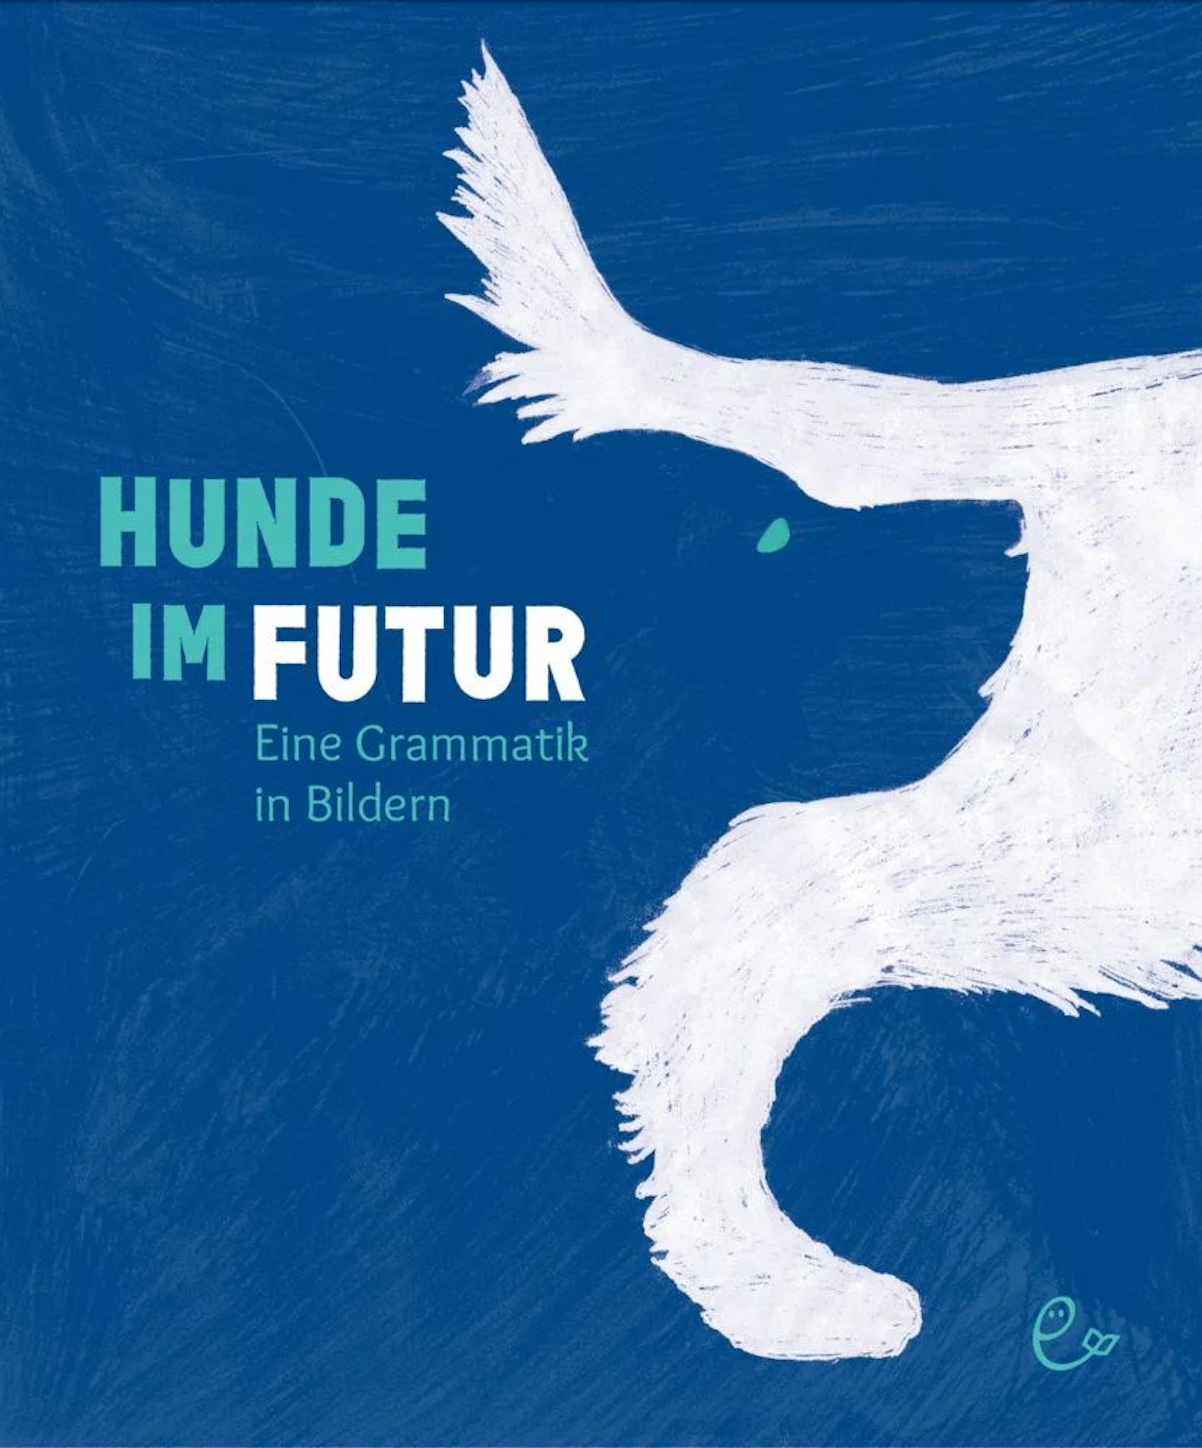 Rieder, Susanna & Johannes: Hunde im Futur. Eine Grammatik in Bildern